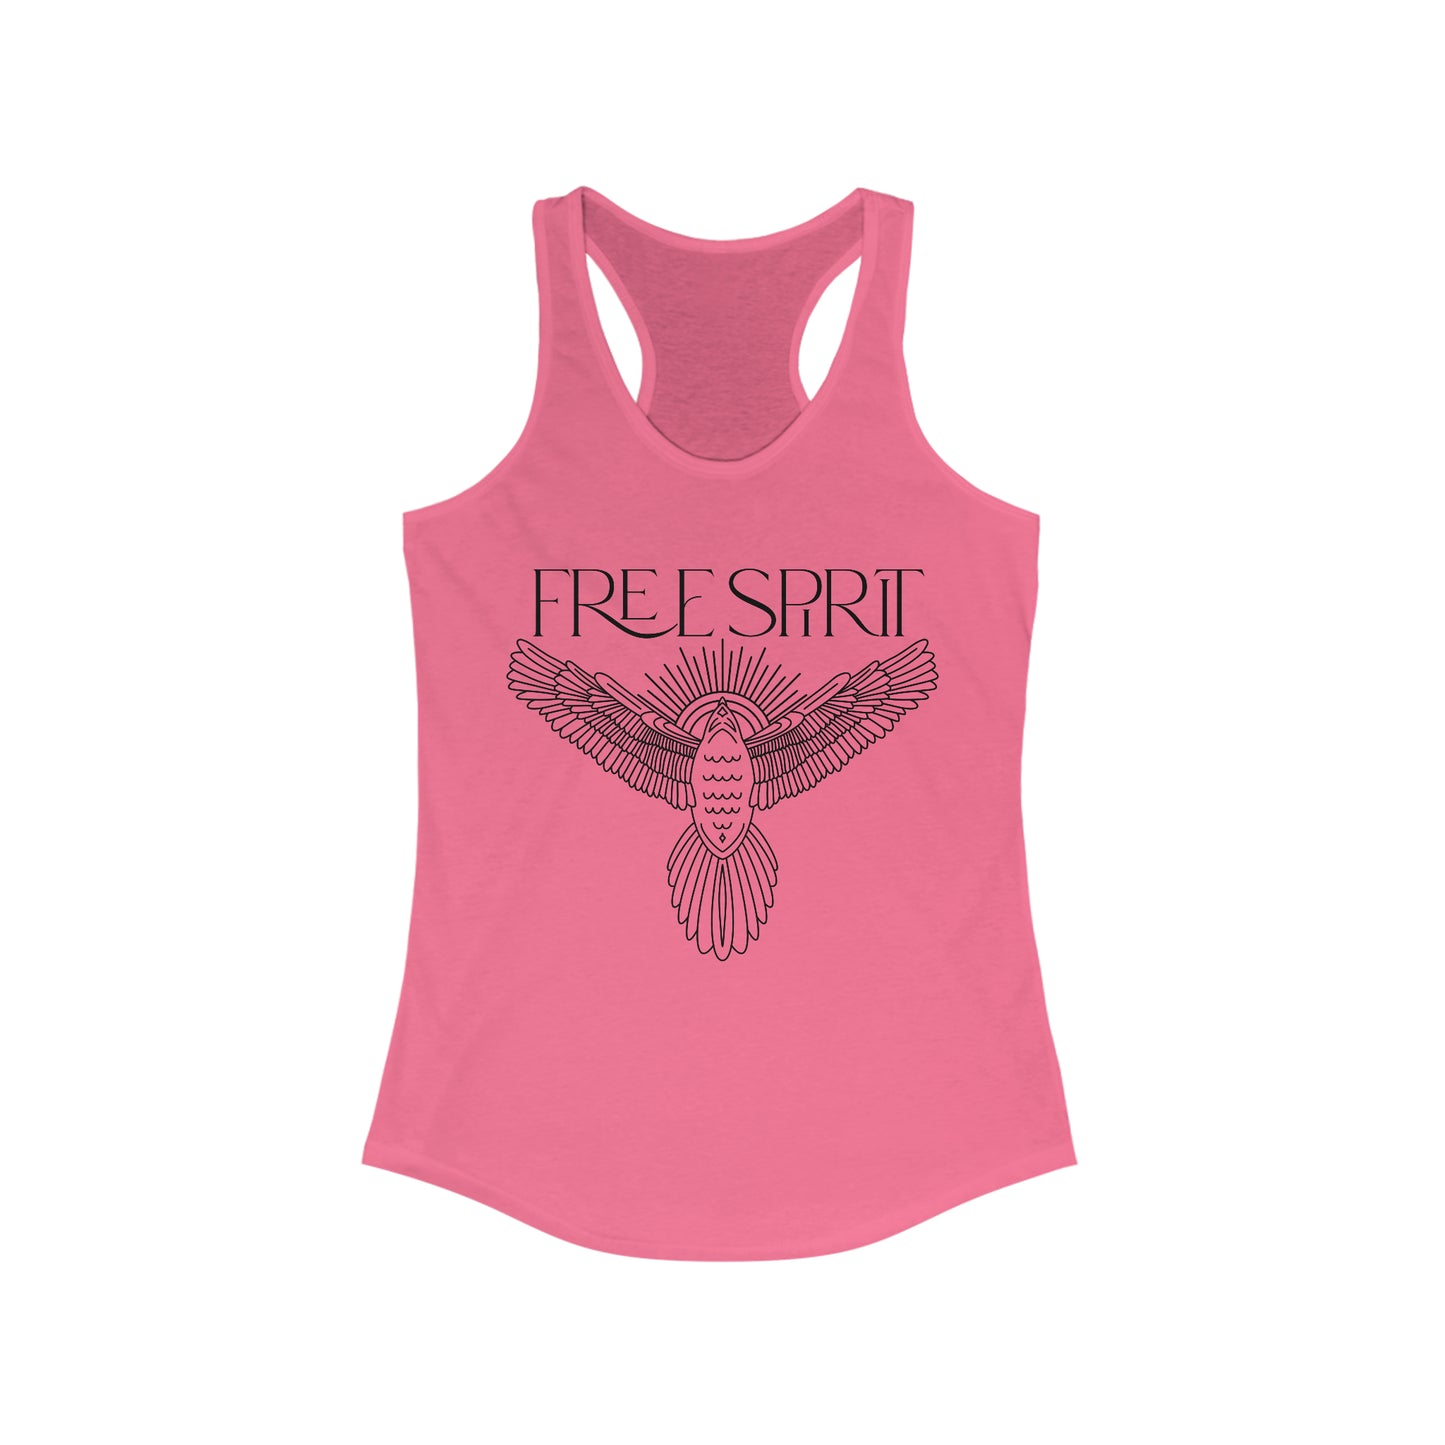 Free Spirit, Women's Racerback Tank